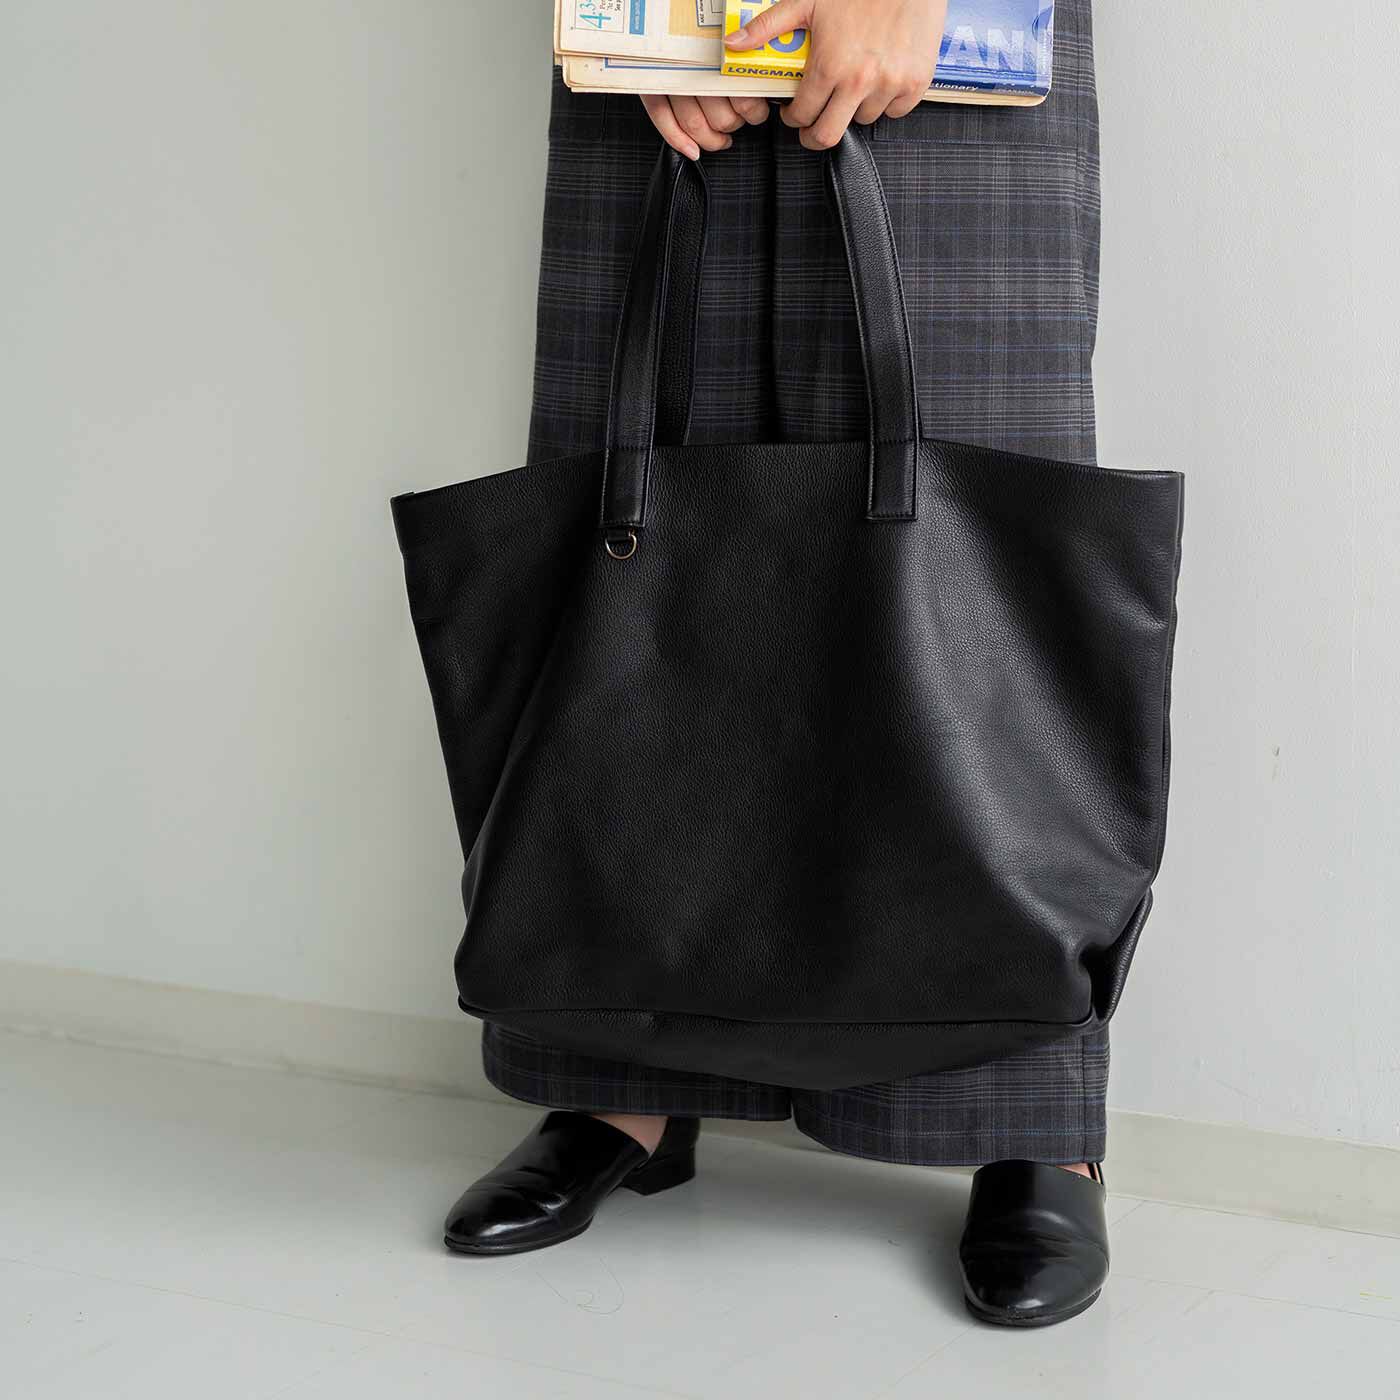 ＆Stories|福岡の鞄作家が作った 職人本革のホエールトートバッグ〈ブラック〉|荷物を入れると底がたわむシルエットもおおらかでどこか愛嬌のある雰囲気。